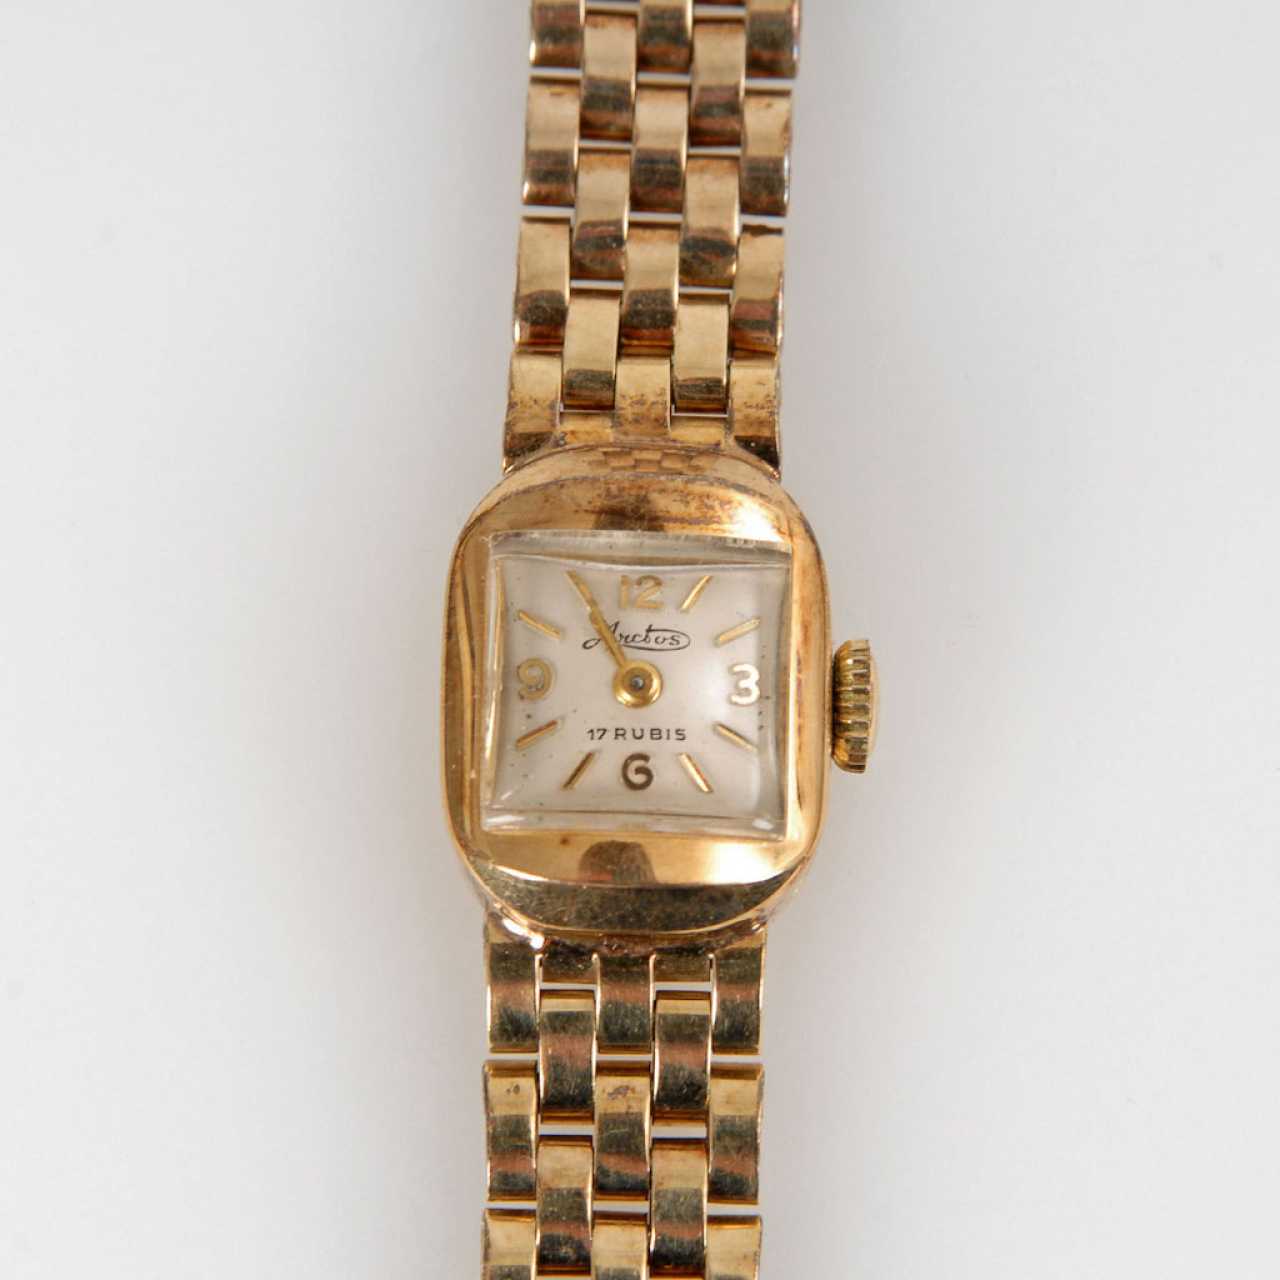 Golden ladies wrist watch, ARCTOS. — buy at online auction at ...